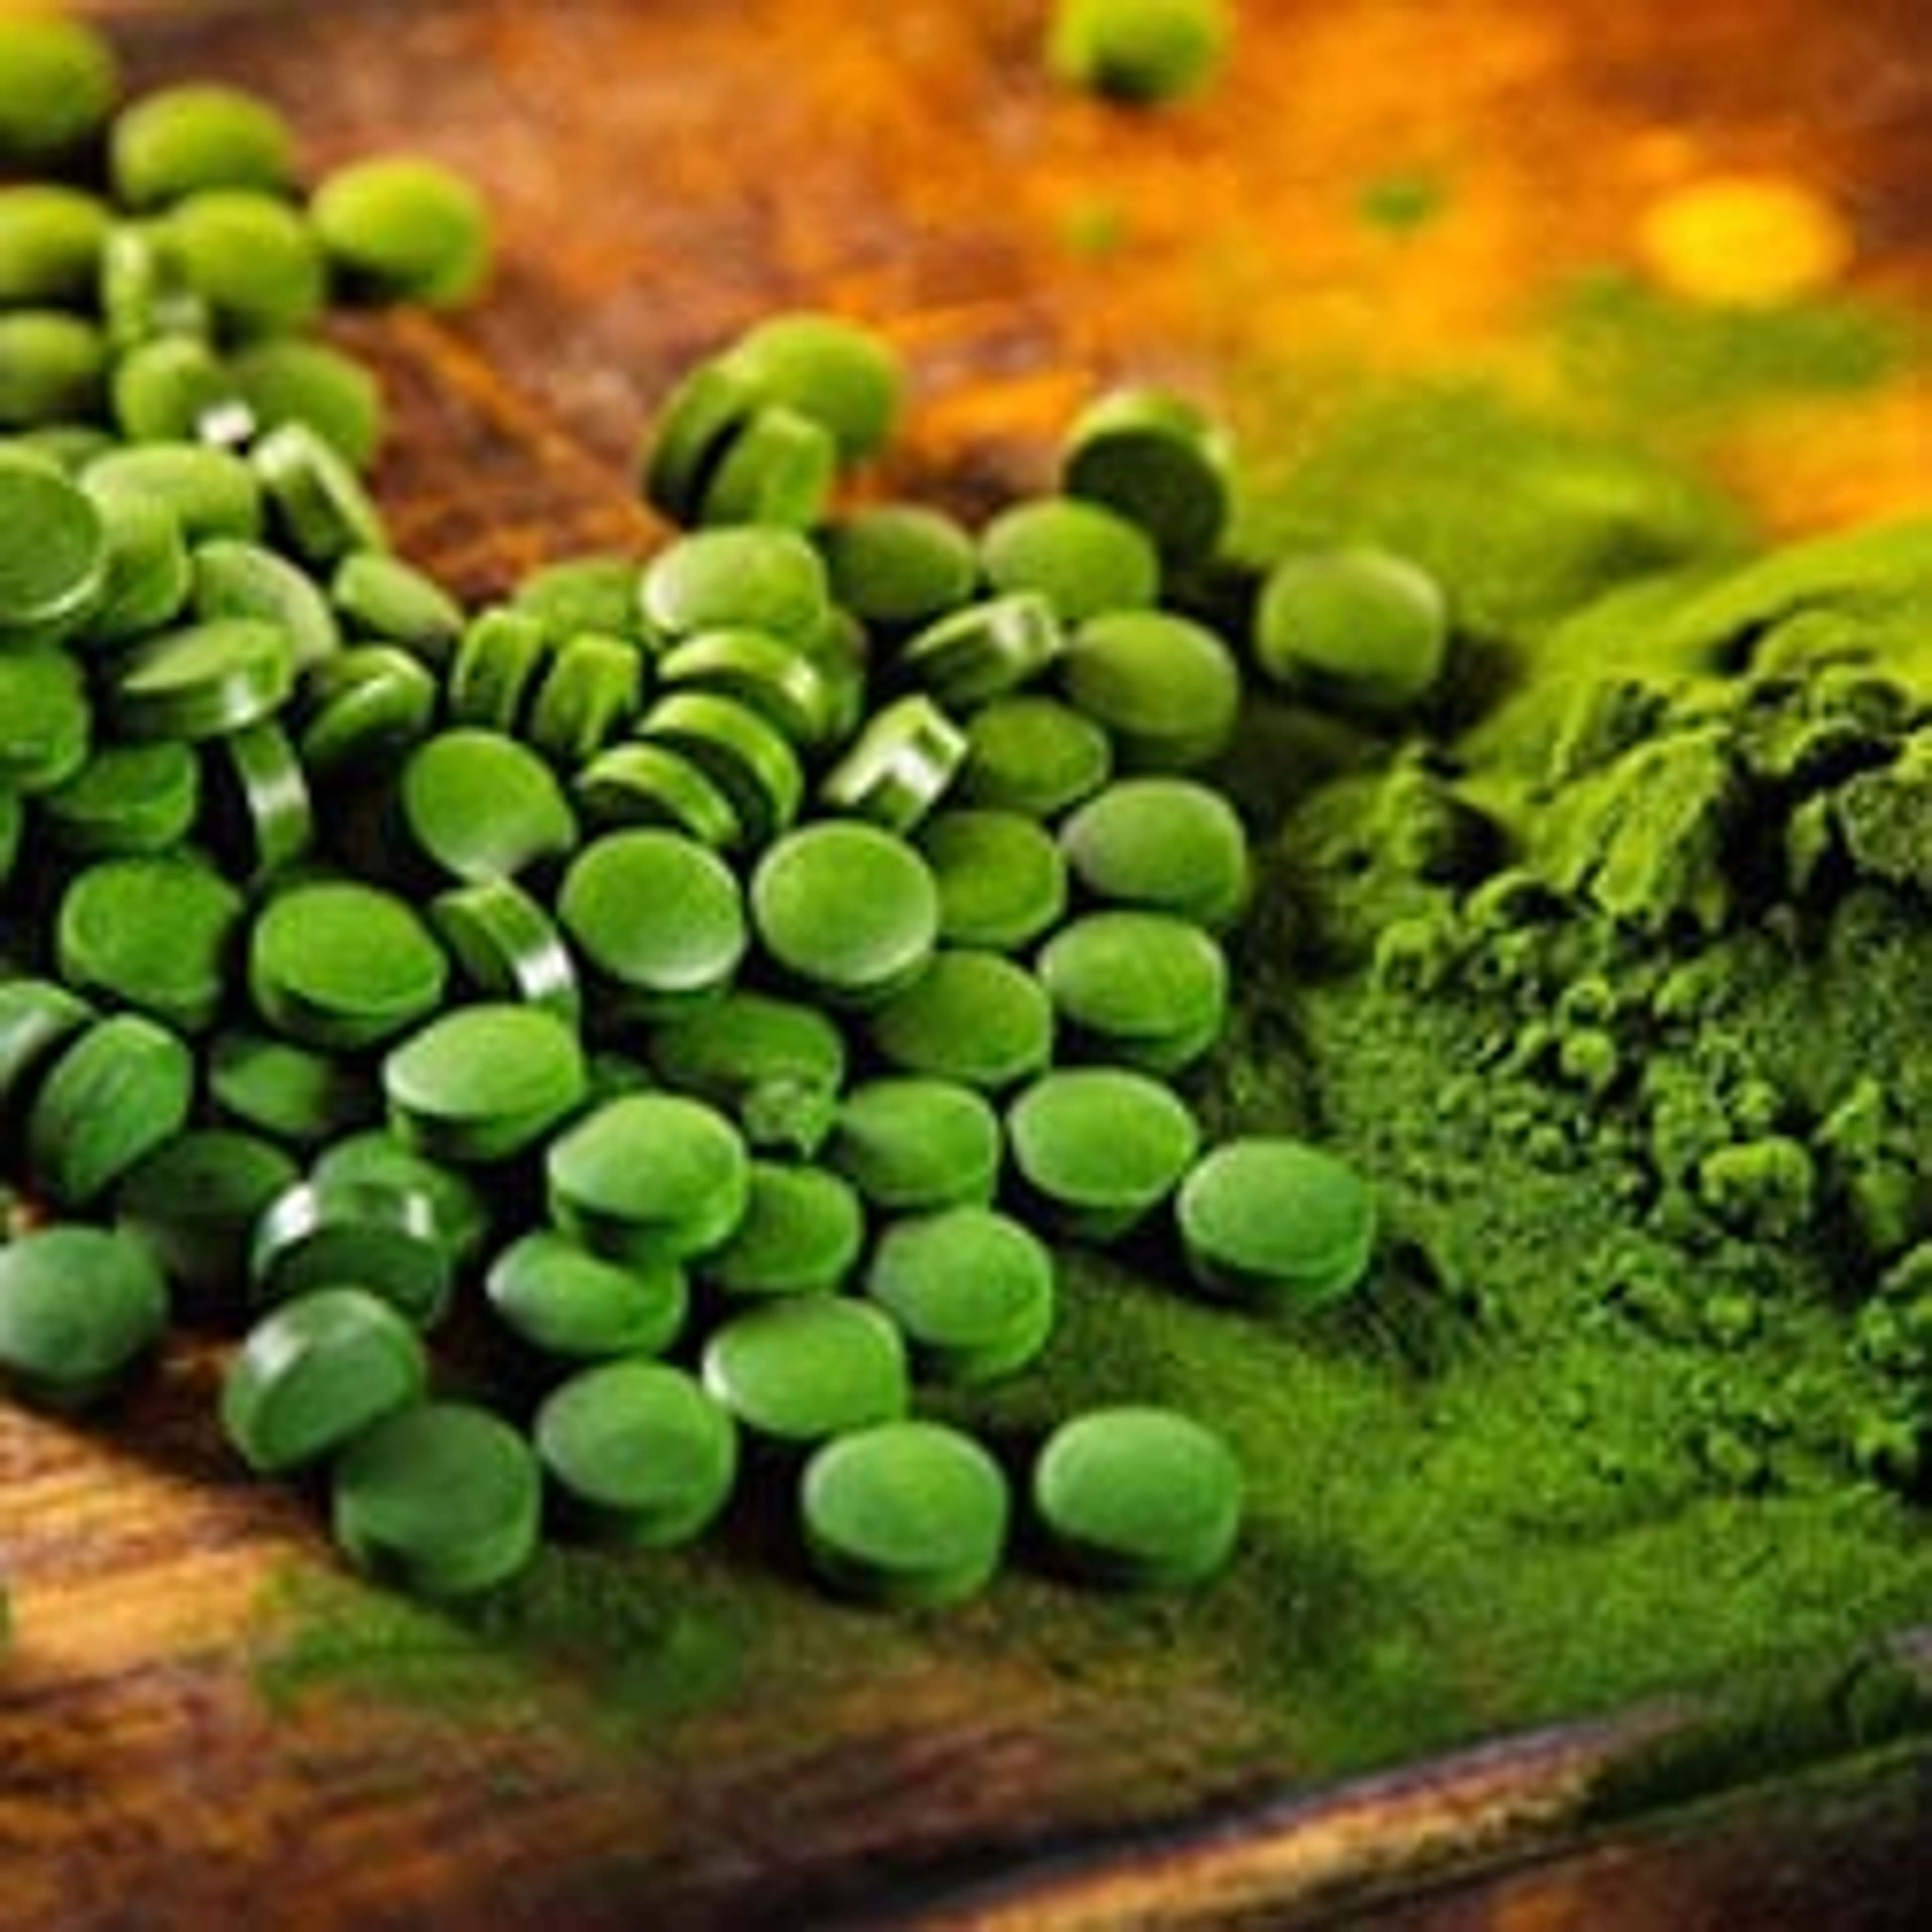 La chlorelle - l'algue riche en substances vitales